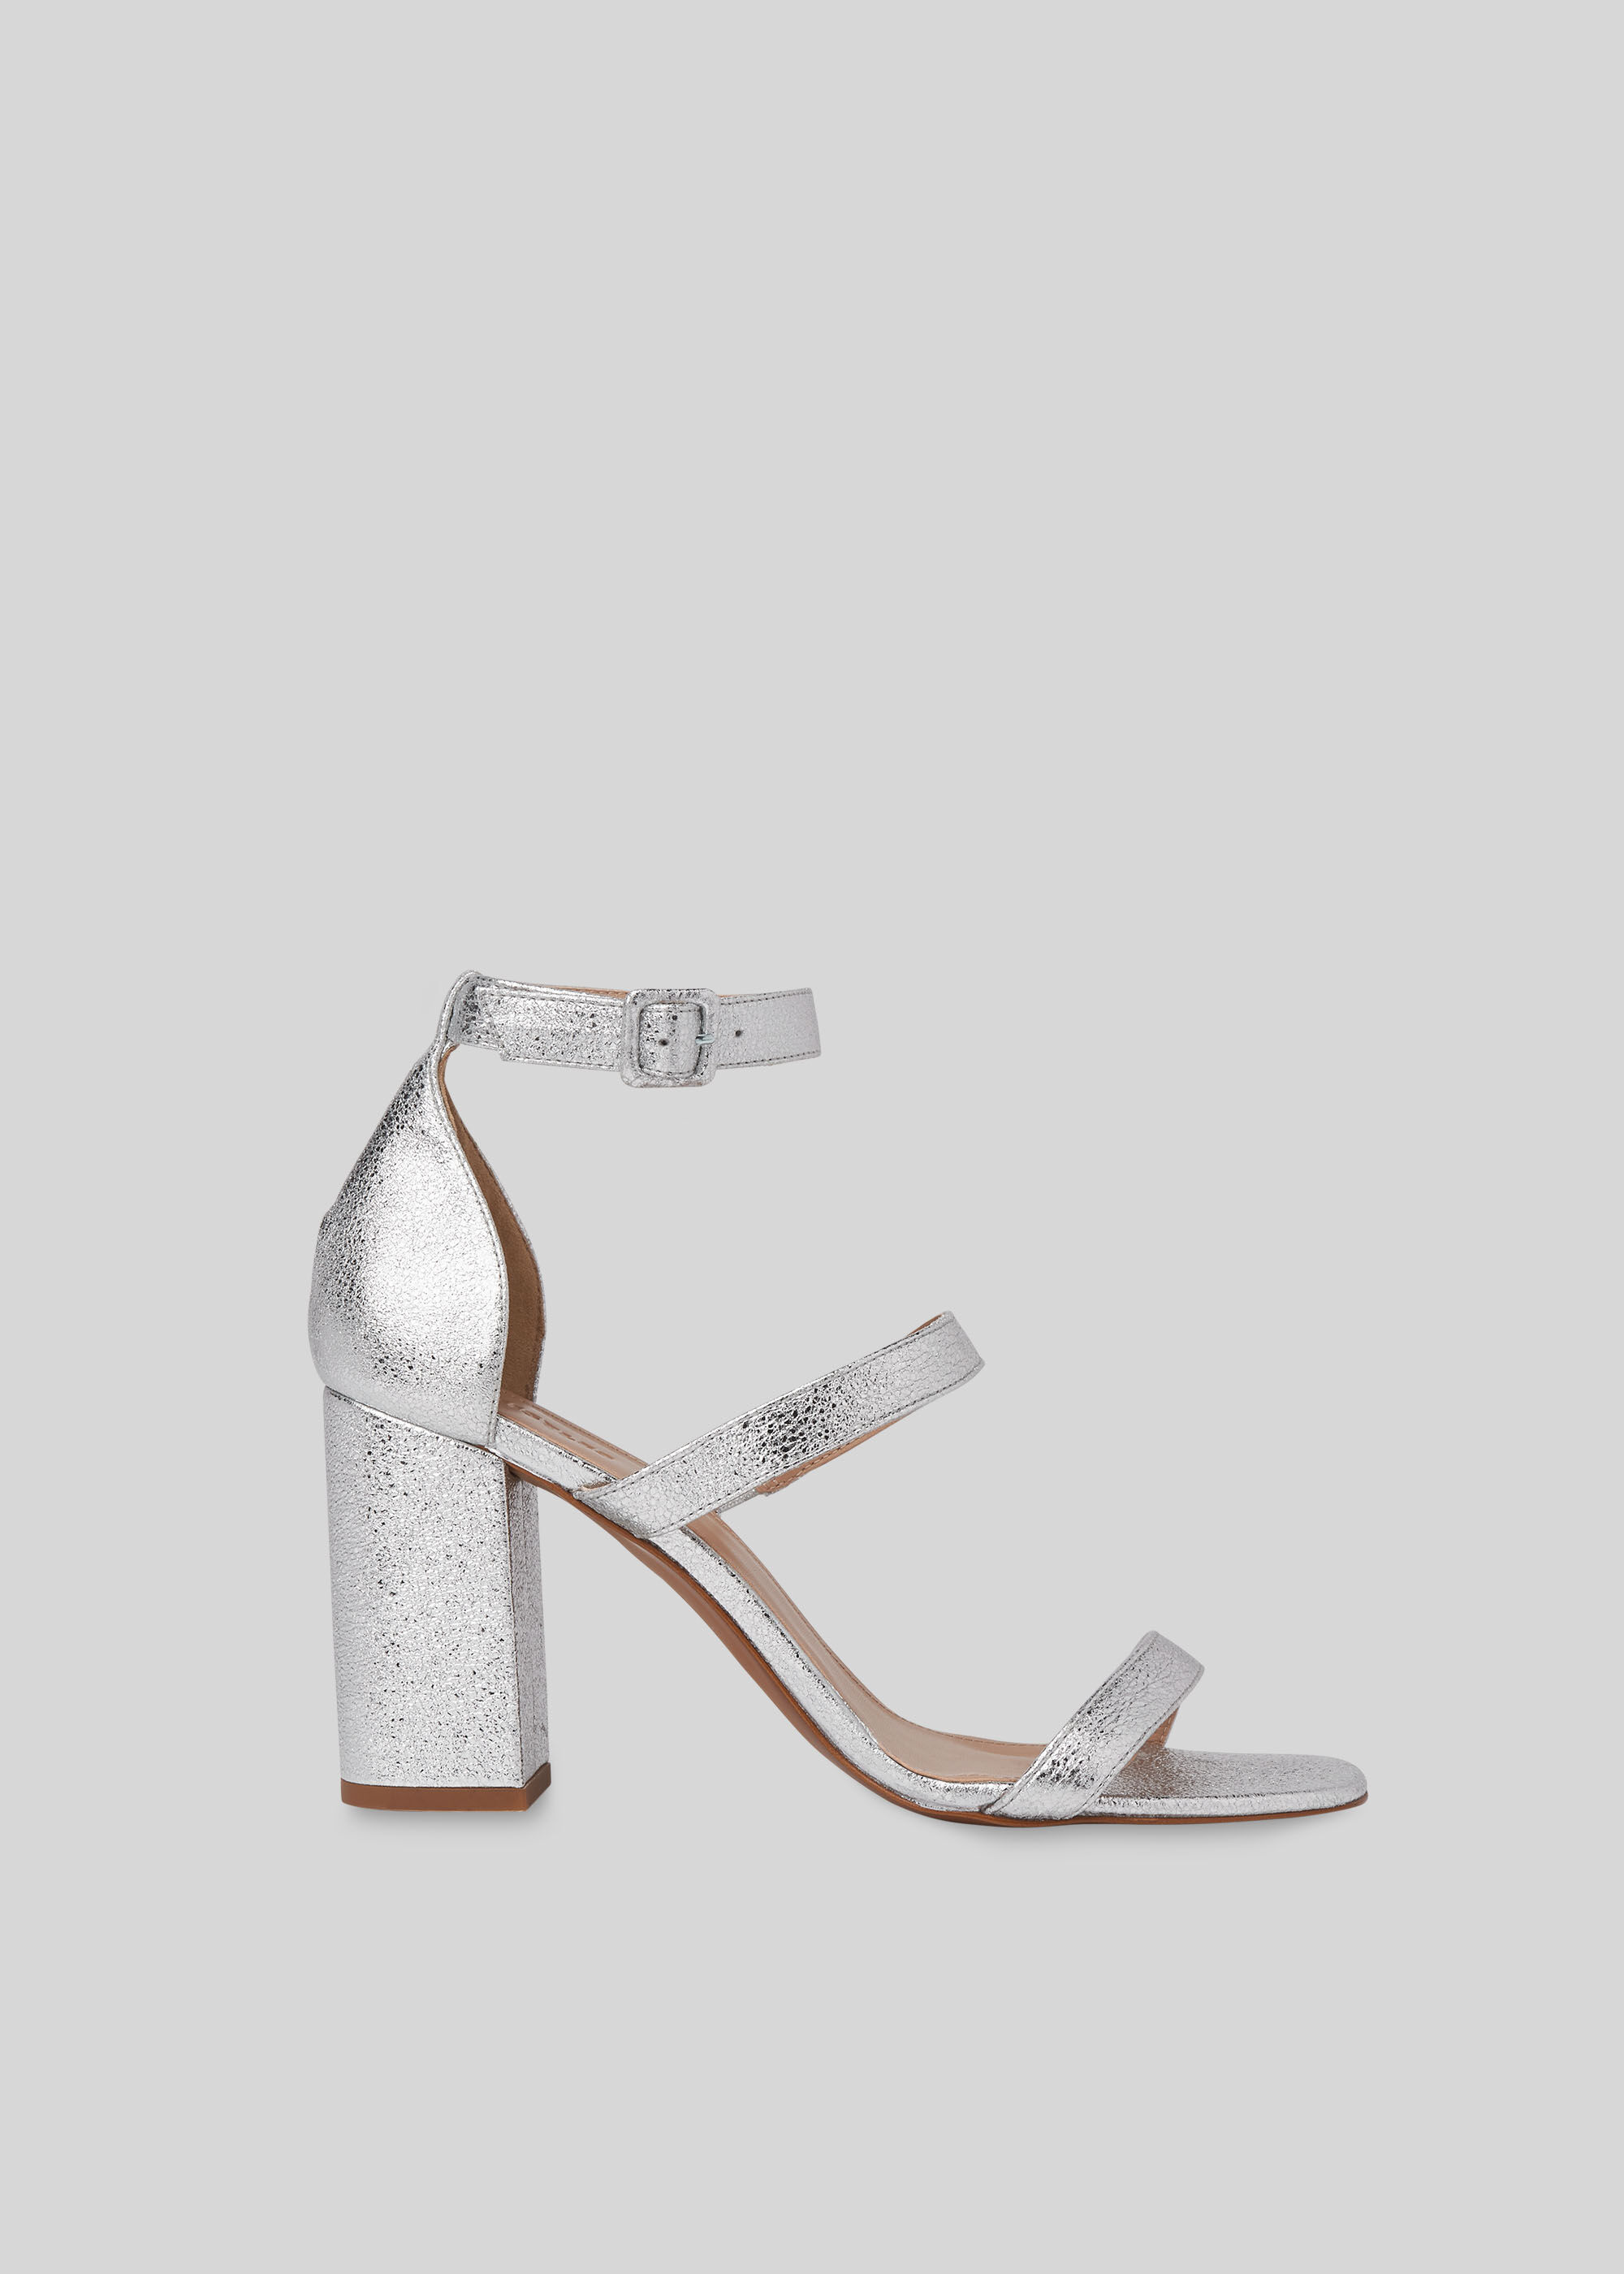 gray silver heels